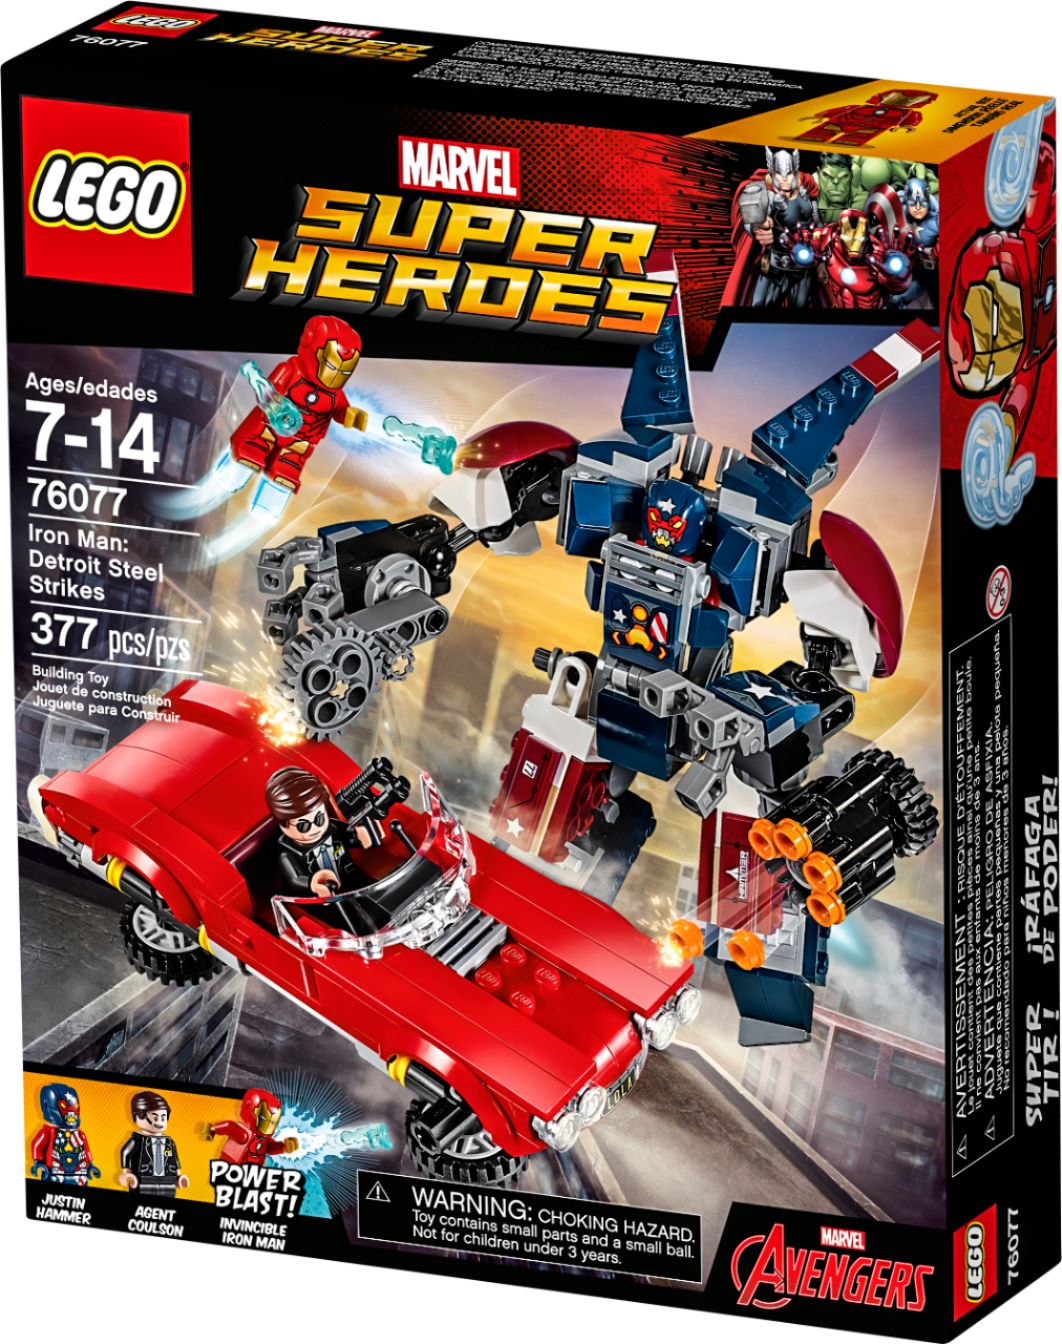 LEGO Super Heroes Iron Man Figure 76206 6378948 - Best Buy